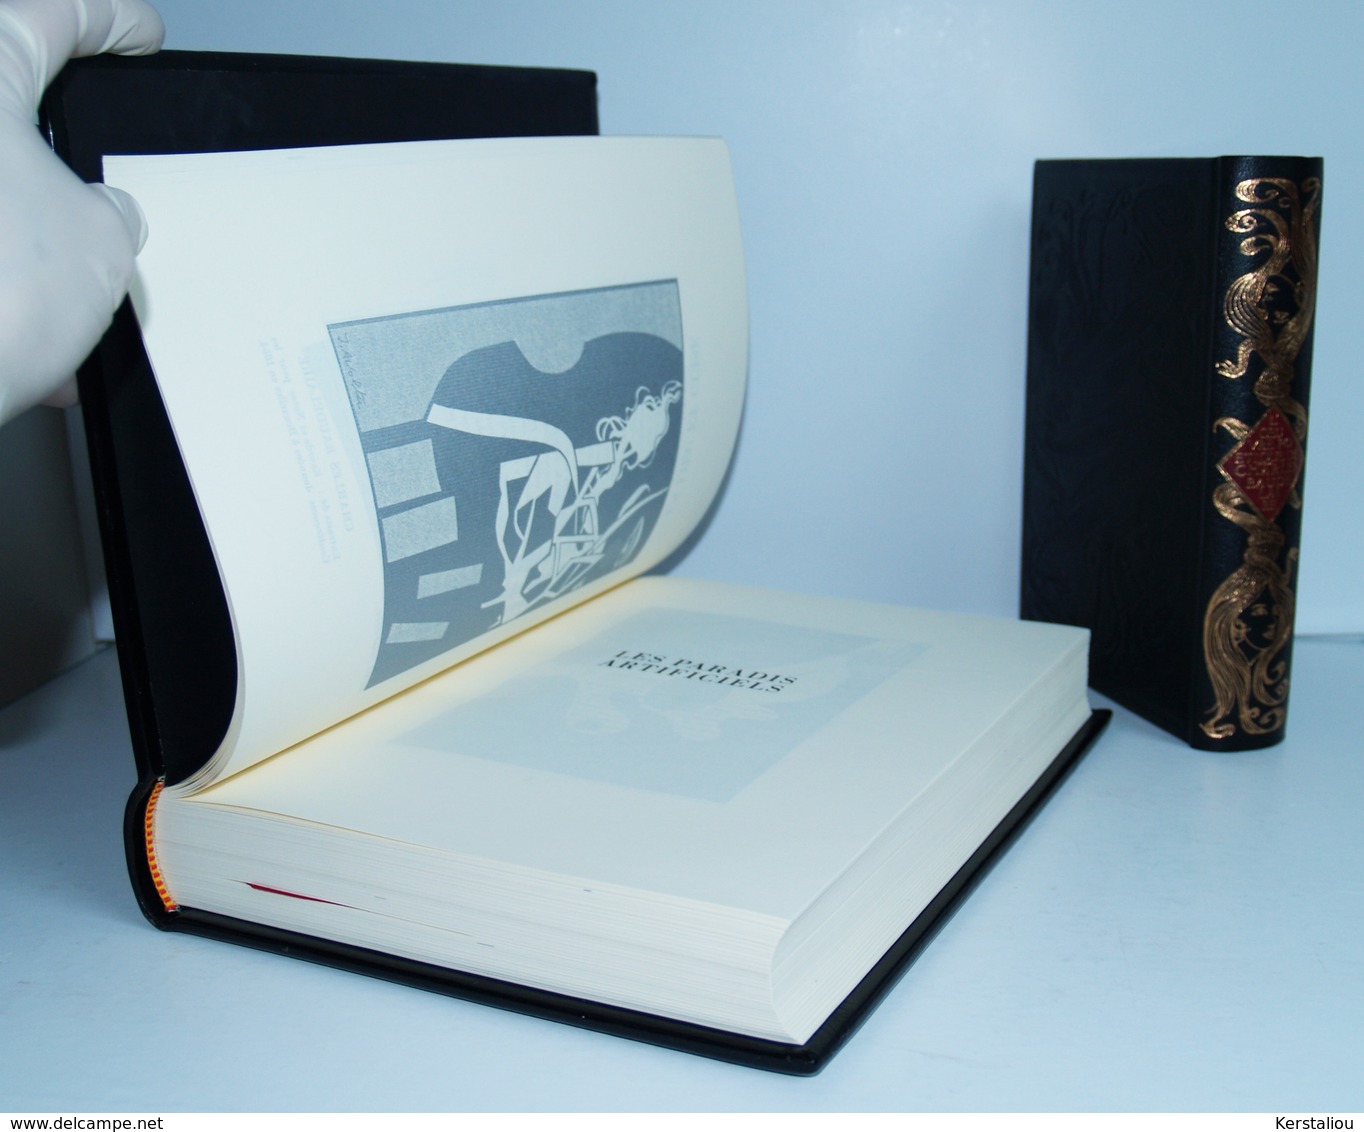 CHARLES BAUDELAIRE–Œuvres poétiques & Les paradis artificiels–2 tomes–Editions Jean de Bonnot–France–1982 & 1984